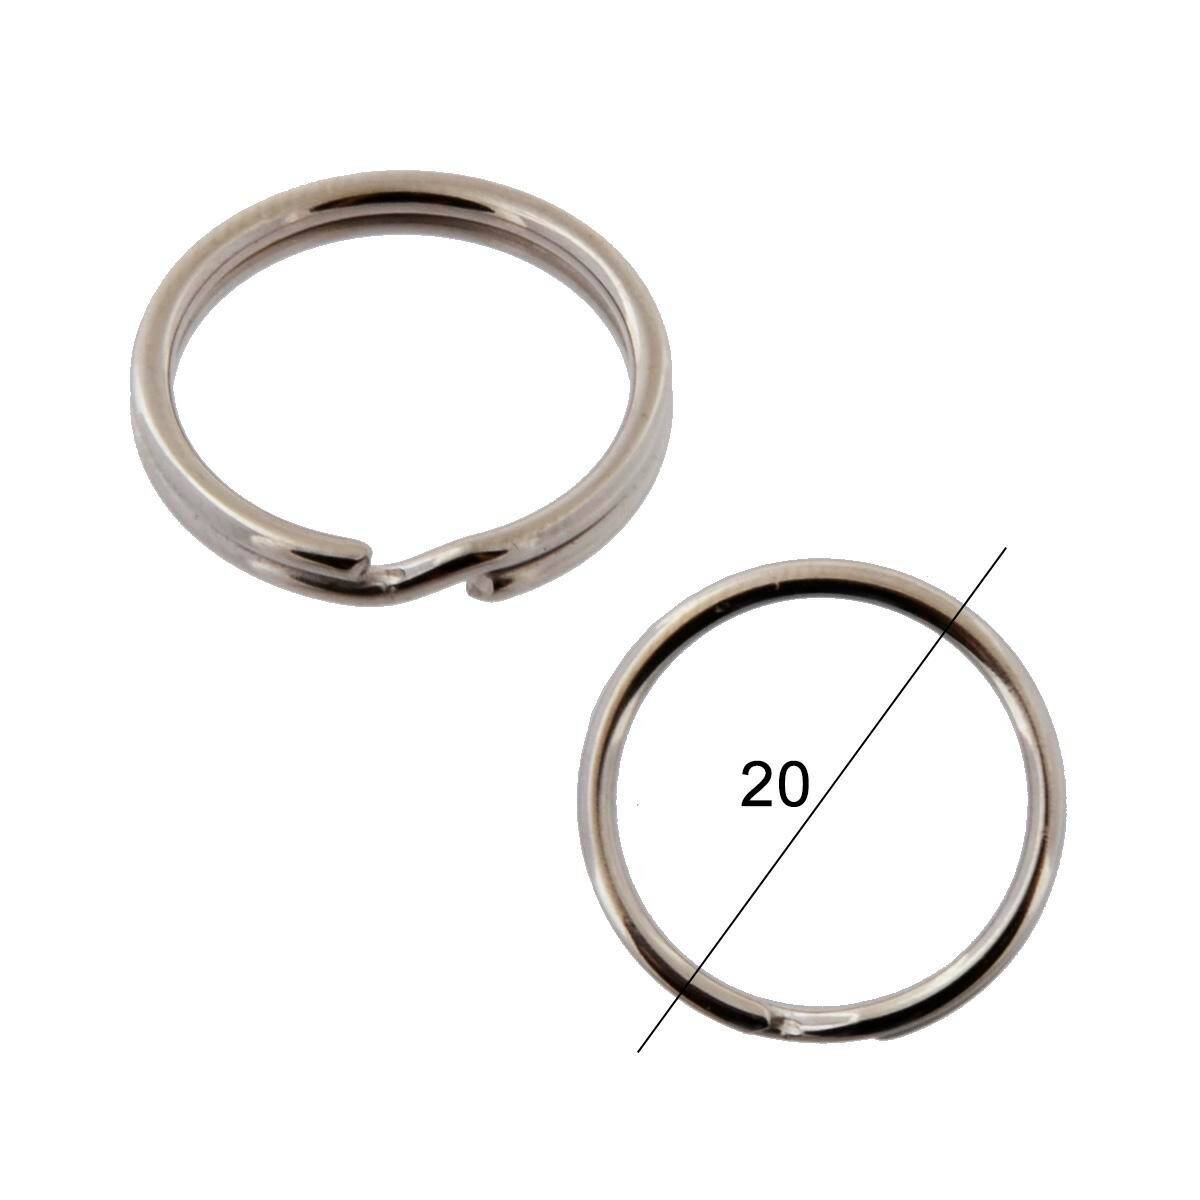 Key rings diameter 20mm